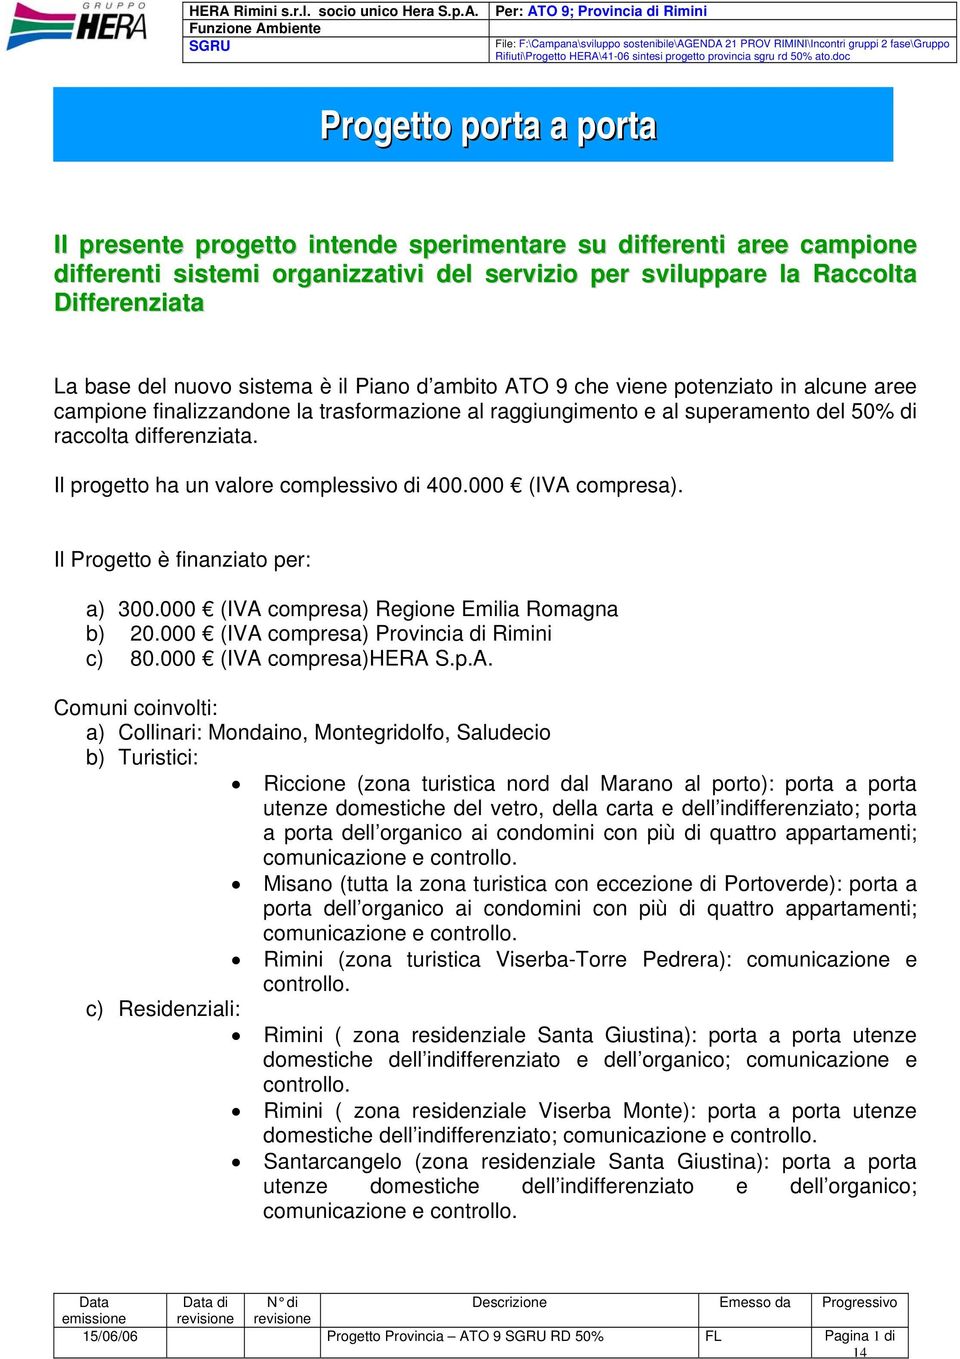 Il progetto ha un valore complessivo di 400.000 (IVA compresa). Il Progetto è finanziato per: a) 300.000 (IVA compresa) Regione Emilia Romagna b) 20.000 (IVA compresa) Provincia di Rimini c) 80.